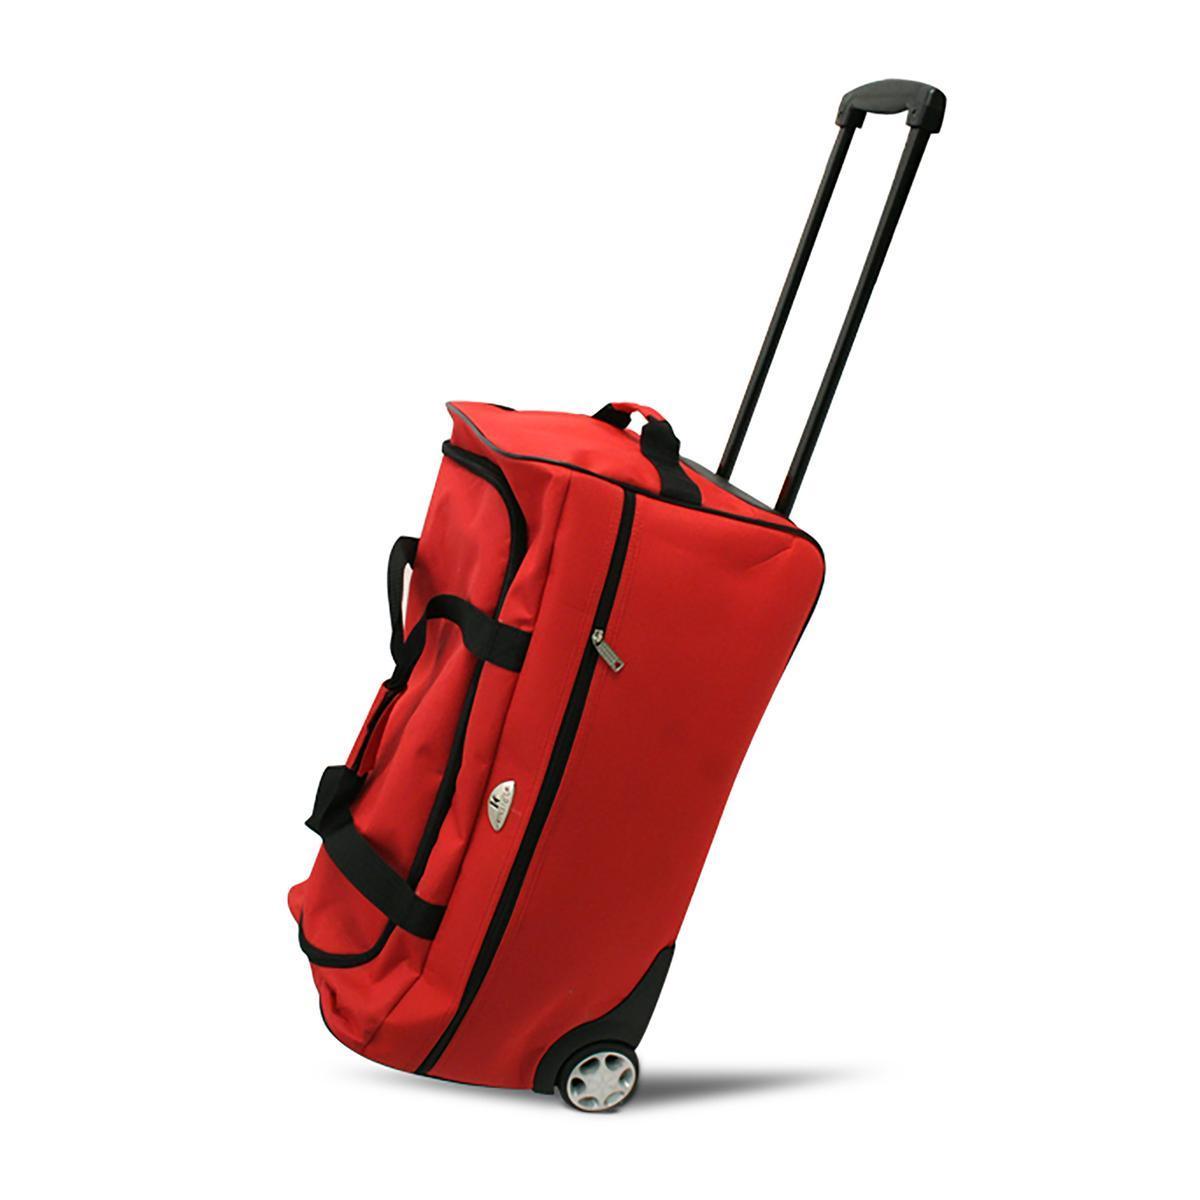 Sac de voyage trolley textile rouge moyen modèle - L 61 x H 32 x 32 cm